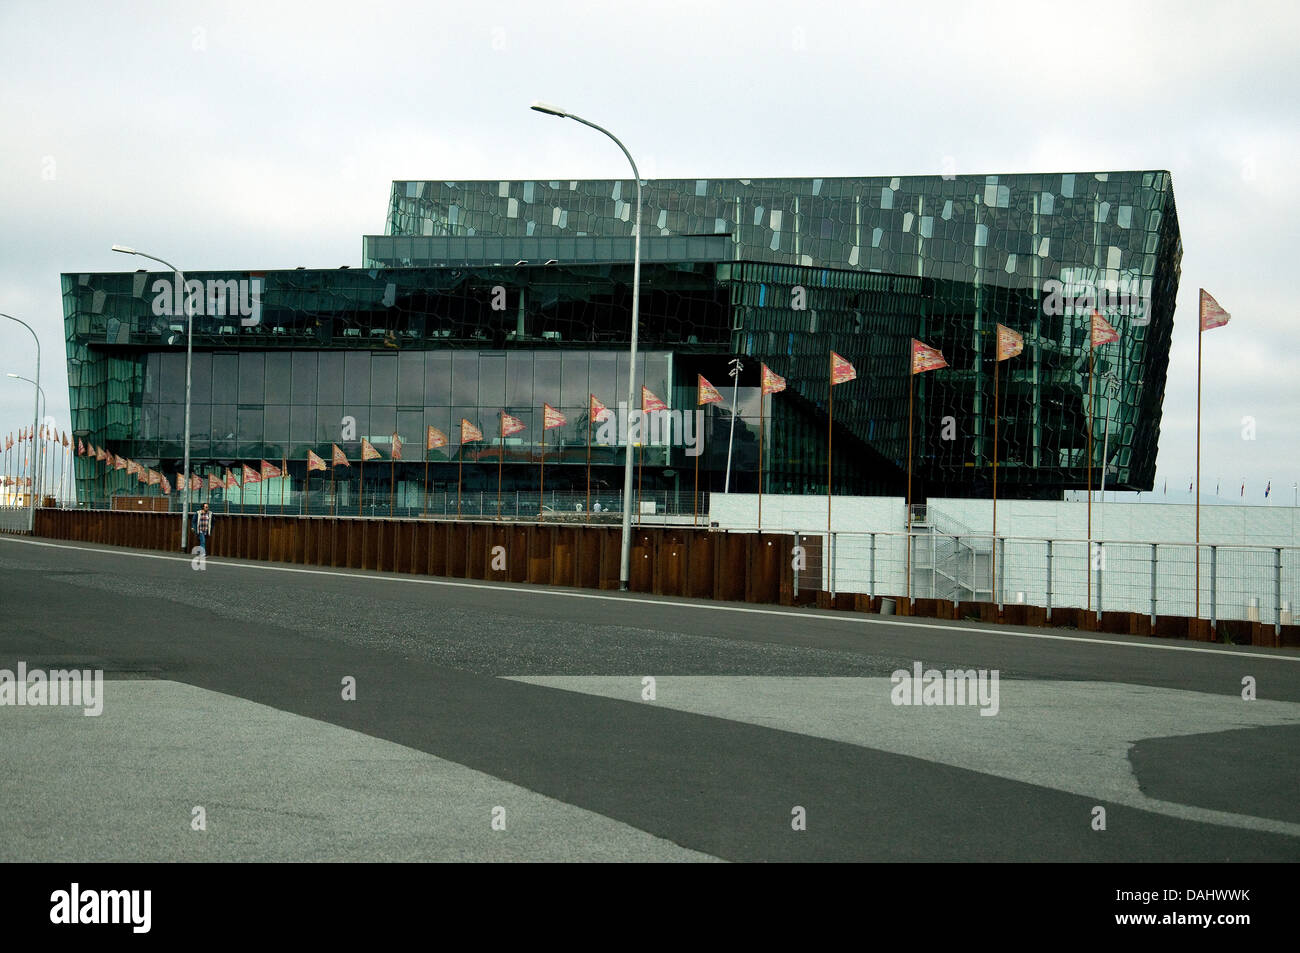 Reykjavik è controverso concert hall, harpa. ha vinto un importante premio E.U. nel 2013 per l'architettura contemporanea Foto Stock